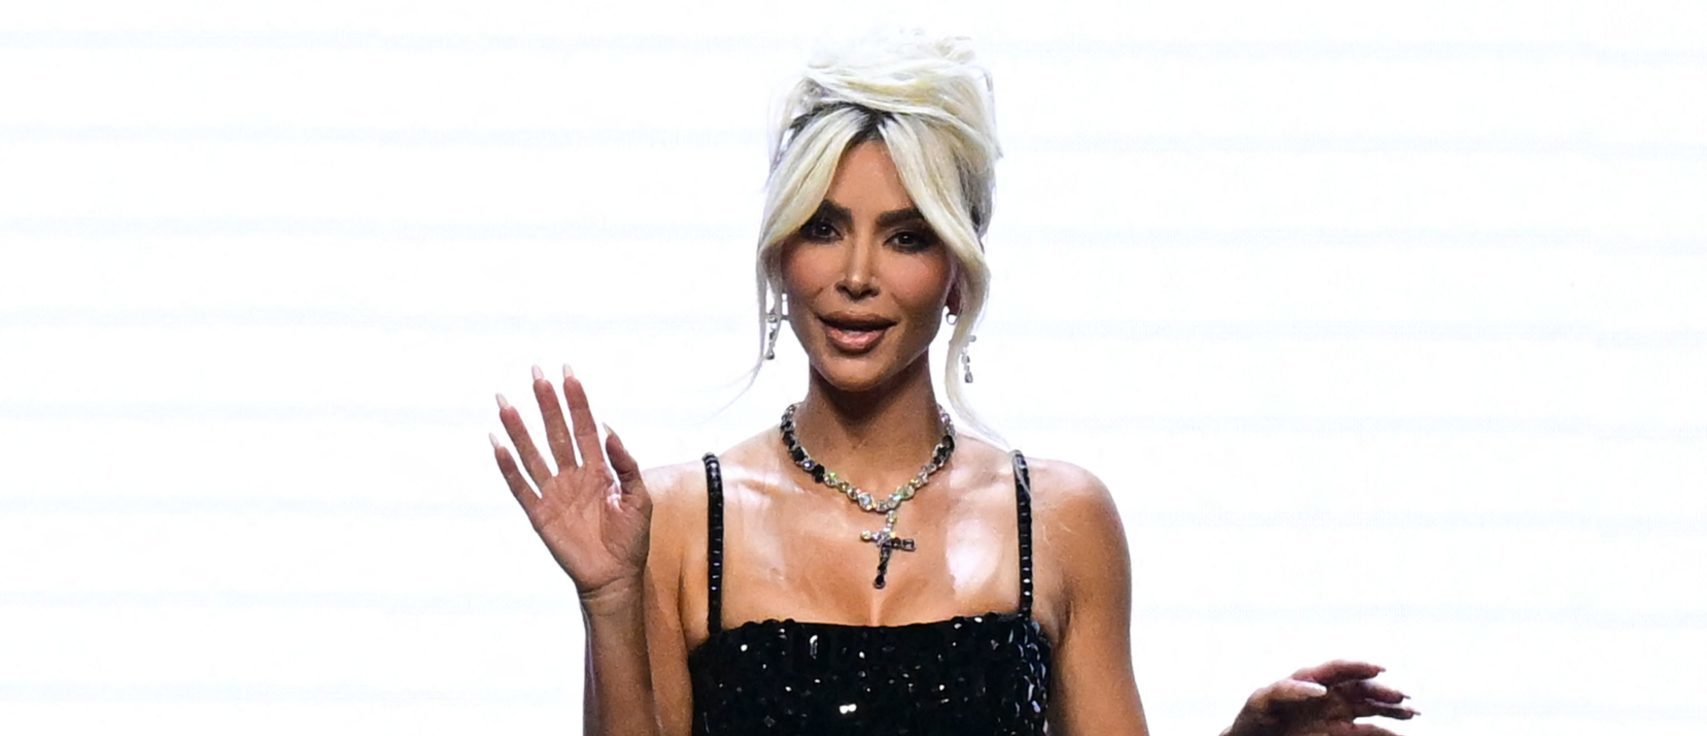 Mira a Kim Kardashian luchar para caminar en su colaboración de moda con Dolce & Gabbana